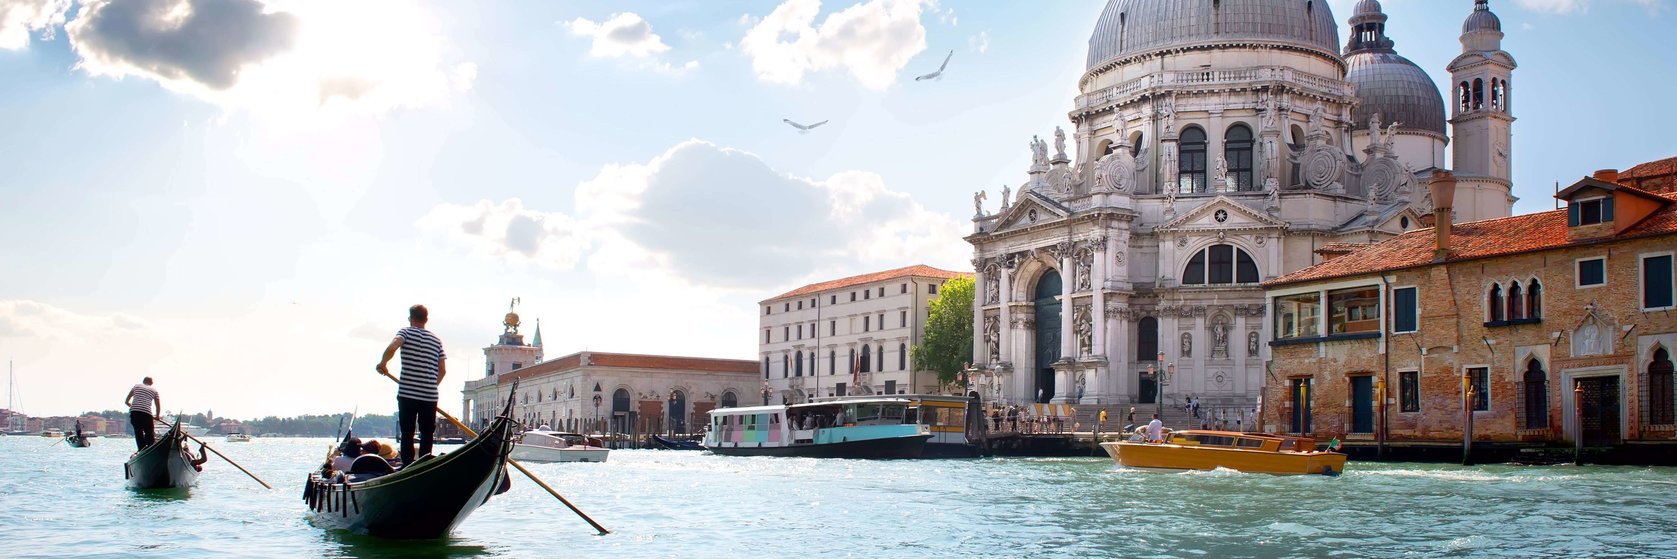 Náboženství, historie a kultura v Benátkách